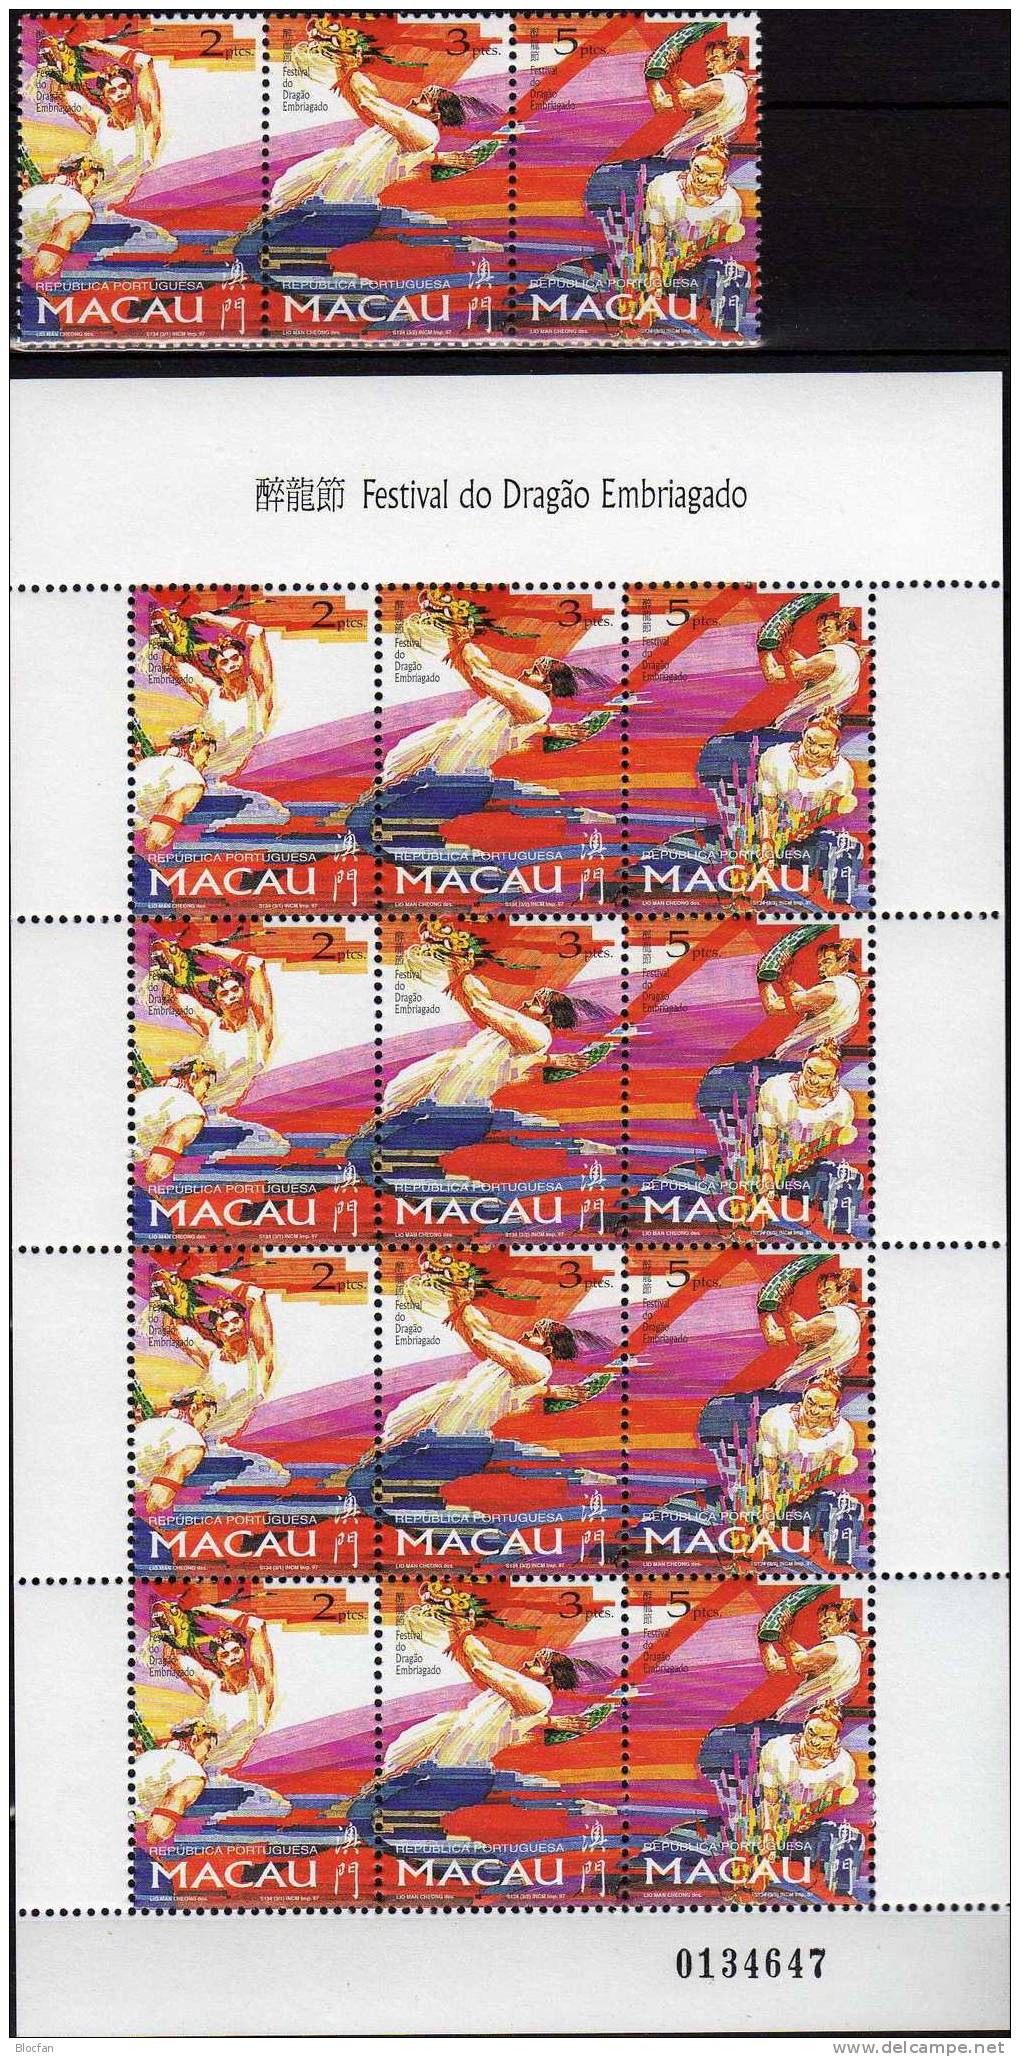 Drachenfestival Macao 913/15, ZD Plus Mini Sheet ** 43€ Drachenfest Mit Tänzer Bändern Fahnen Feuerwerk Of MACAU - Verzamelingen & Reeksen